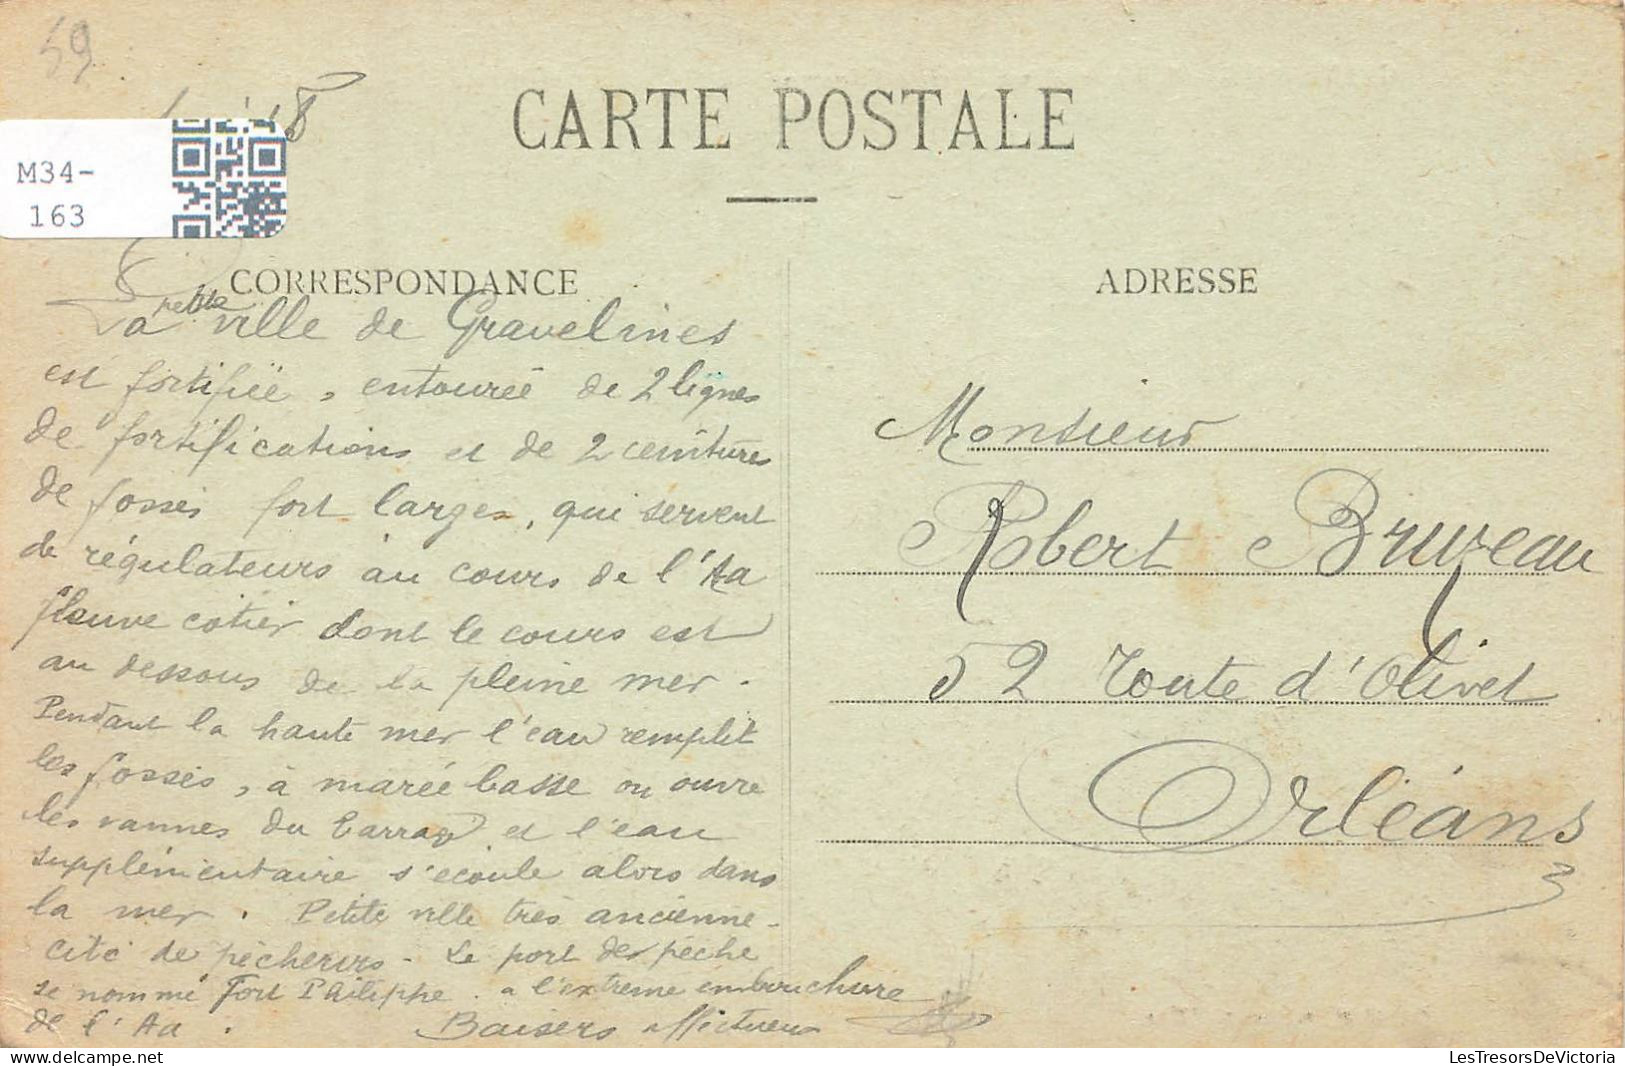 FRANCE - Gravelines - Mairie - Beffroi - Caisse D'Epargne - Carte Postale Ancienne - Gravelines